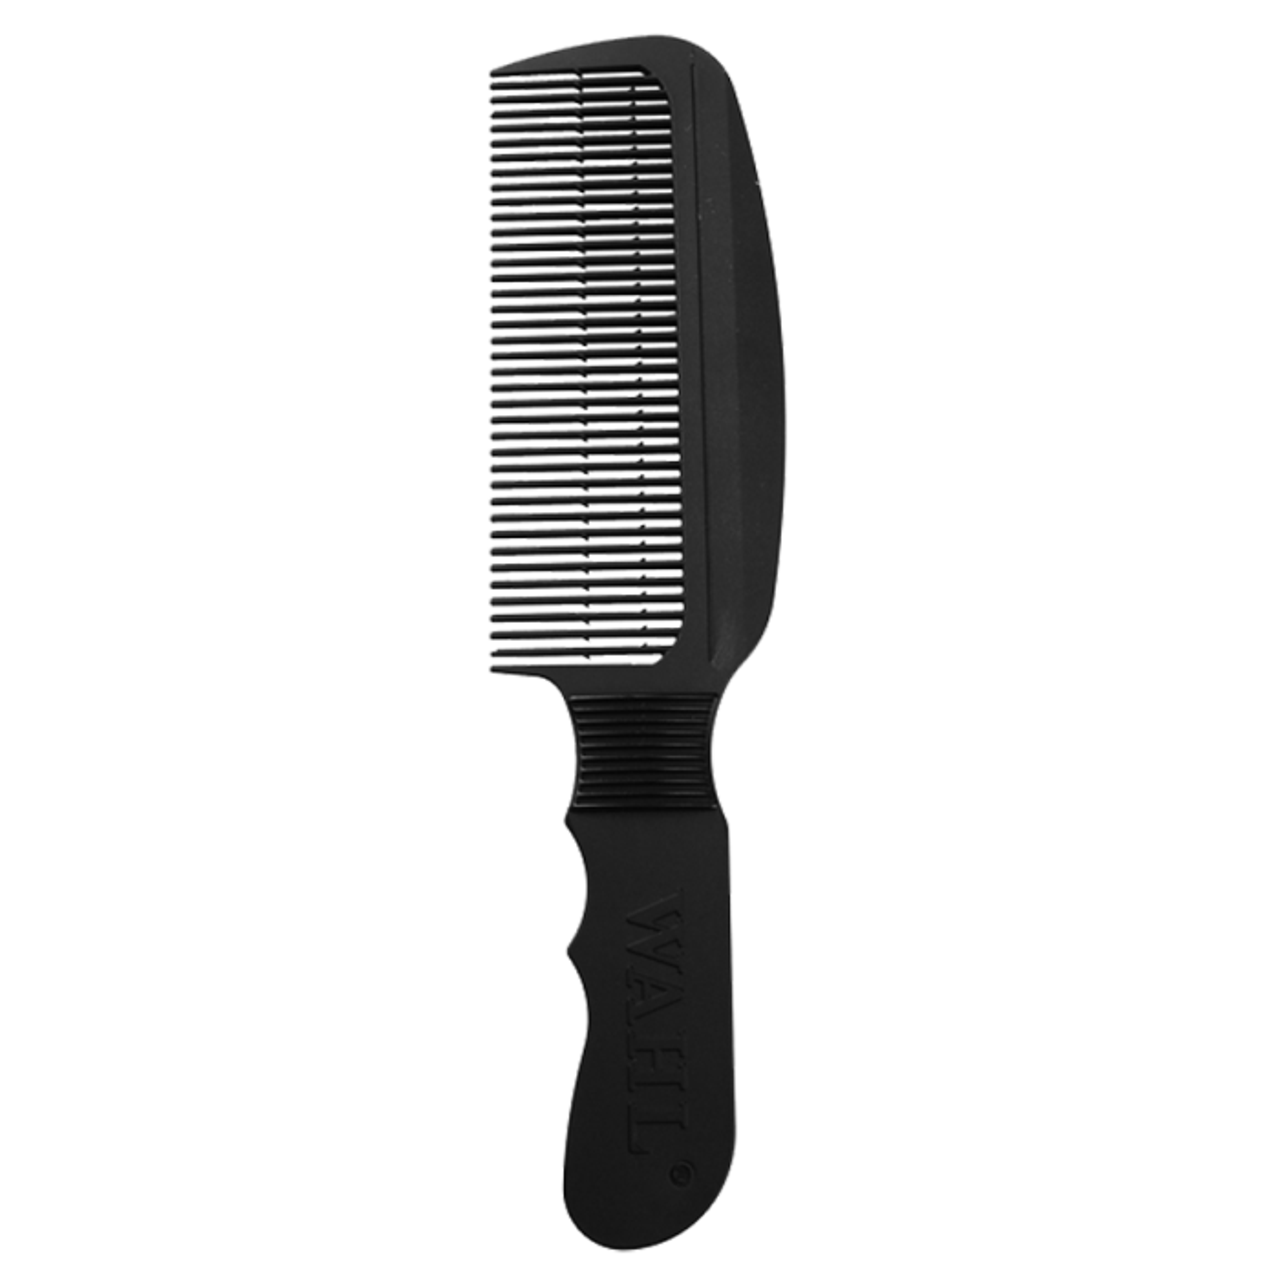 WAHL Professional Flat Top Comb - Black